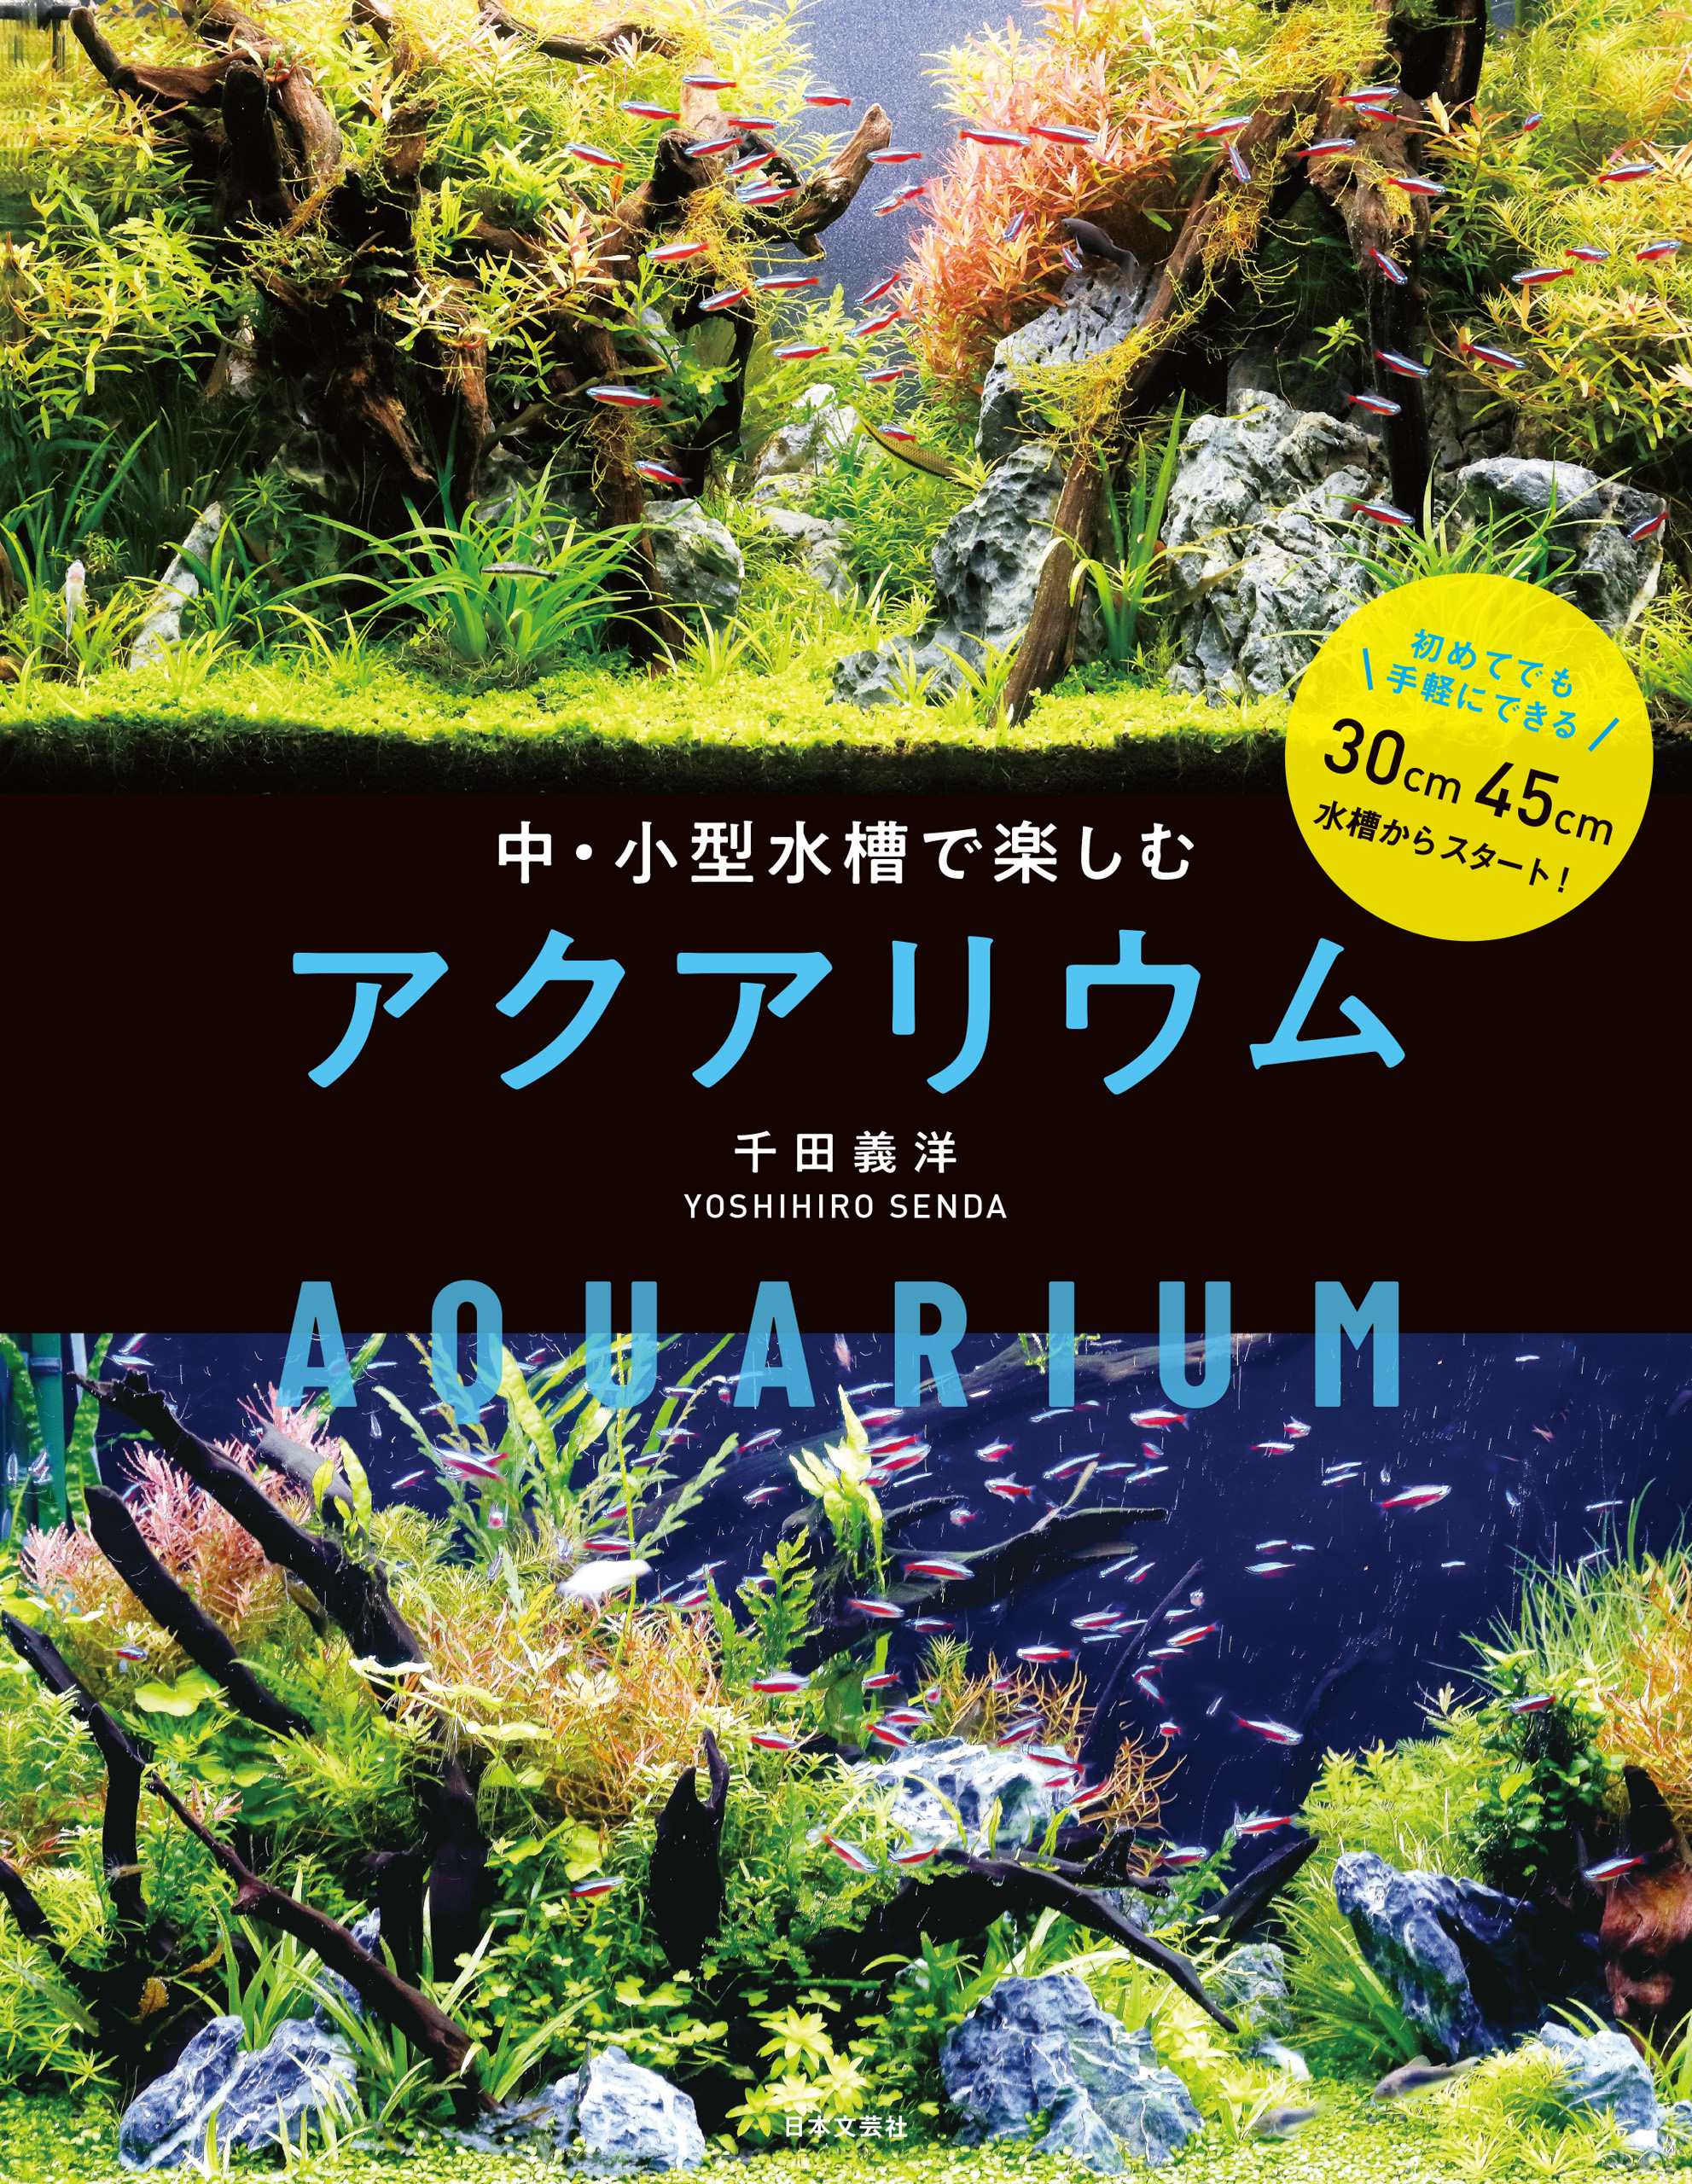 中・小型水槽で楽しむ アクアリウム(書籍) - 電子書籍 | U-NEXT 初回600円分無料